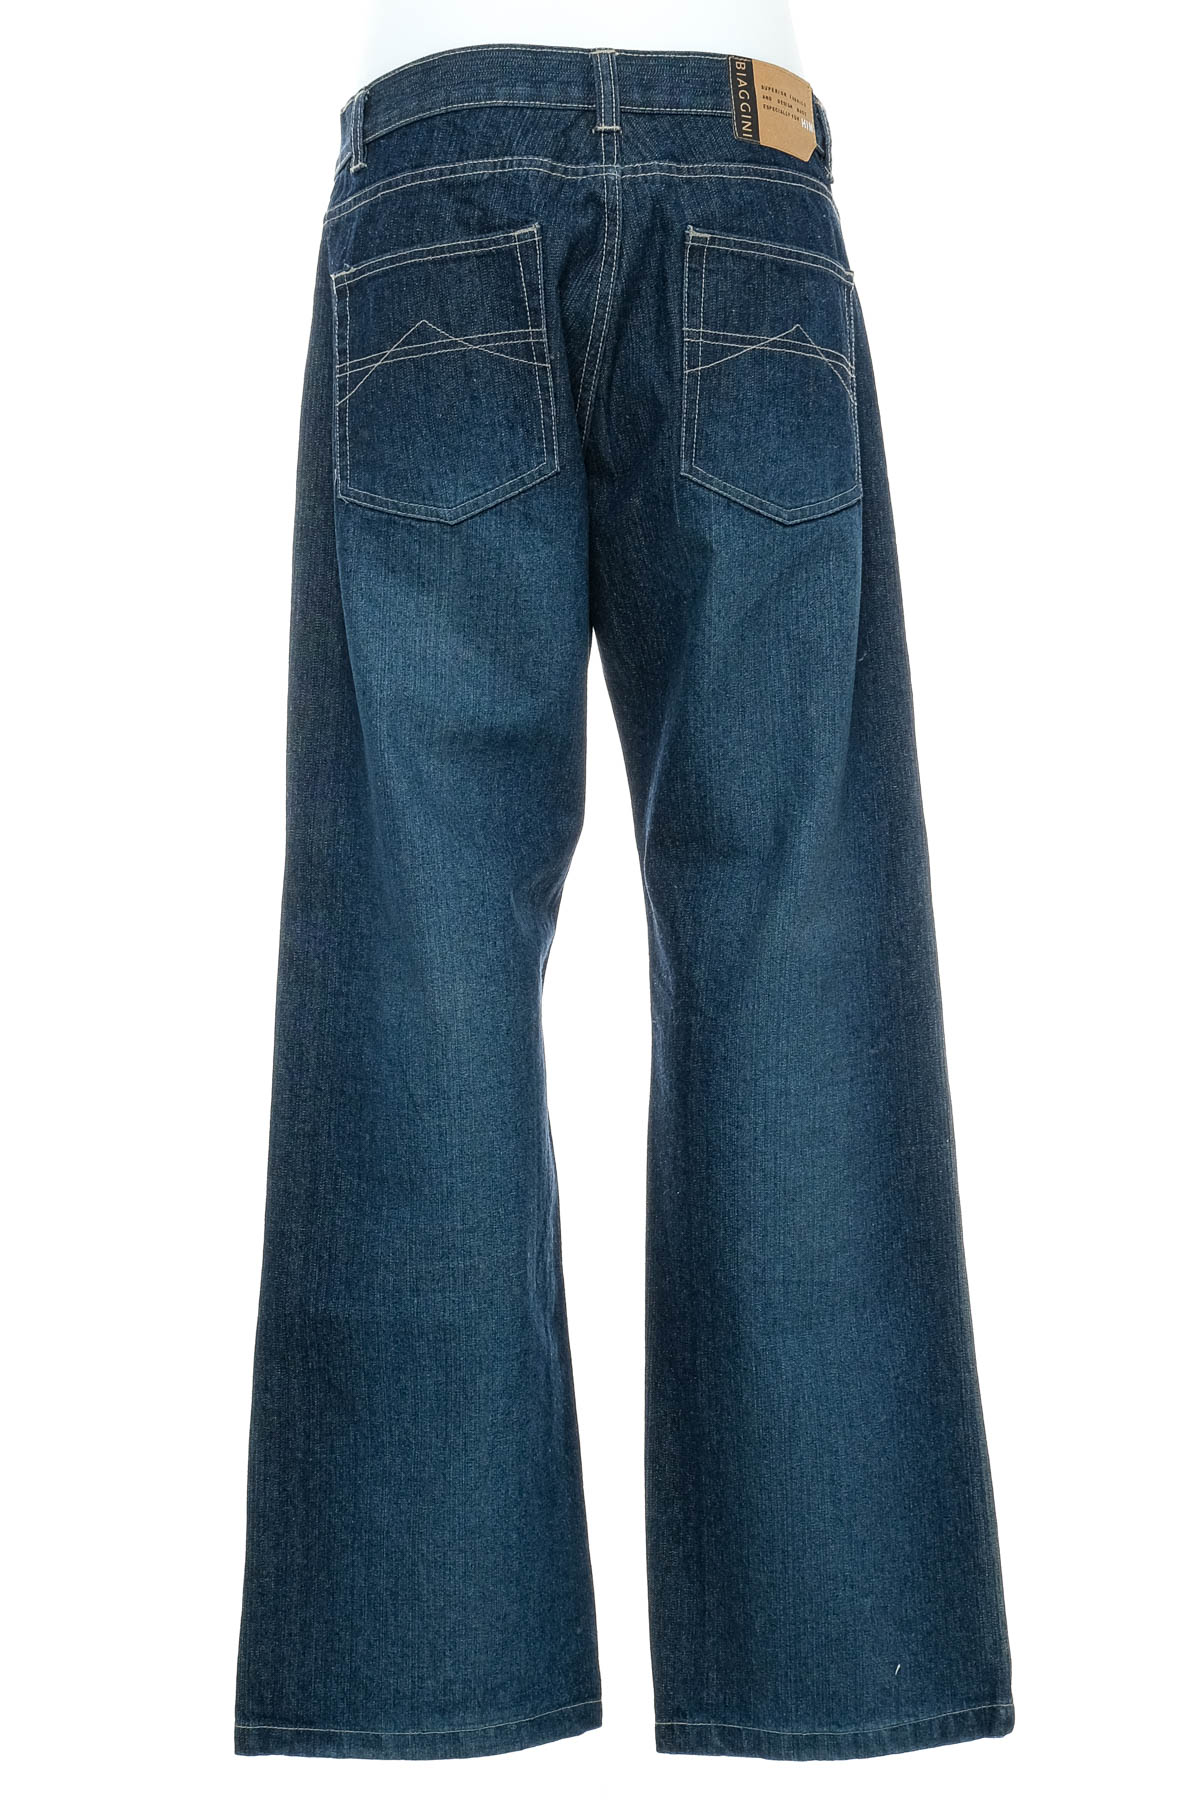 Jeans pentru bărbăți - Biaggini - 1